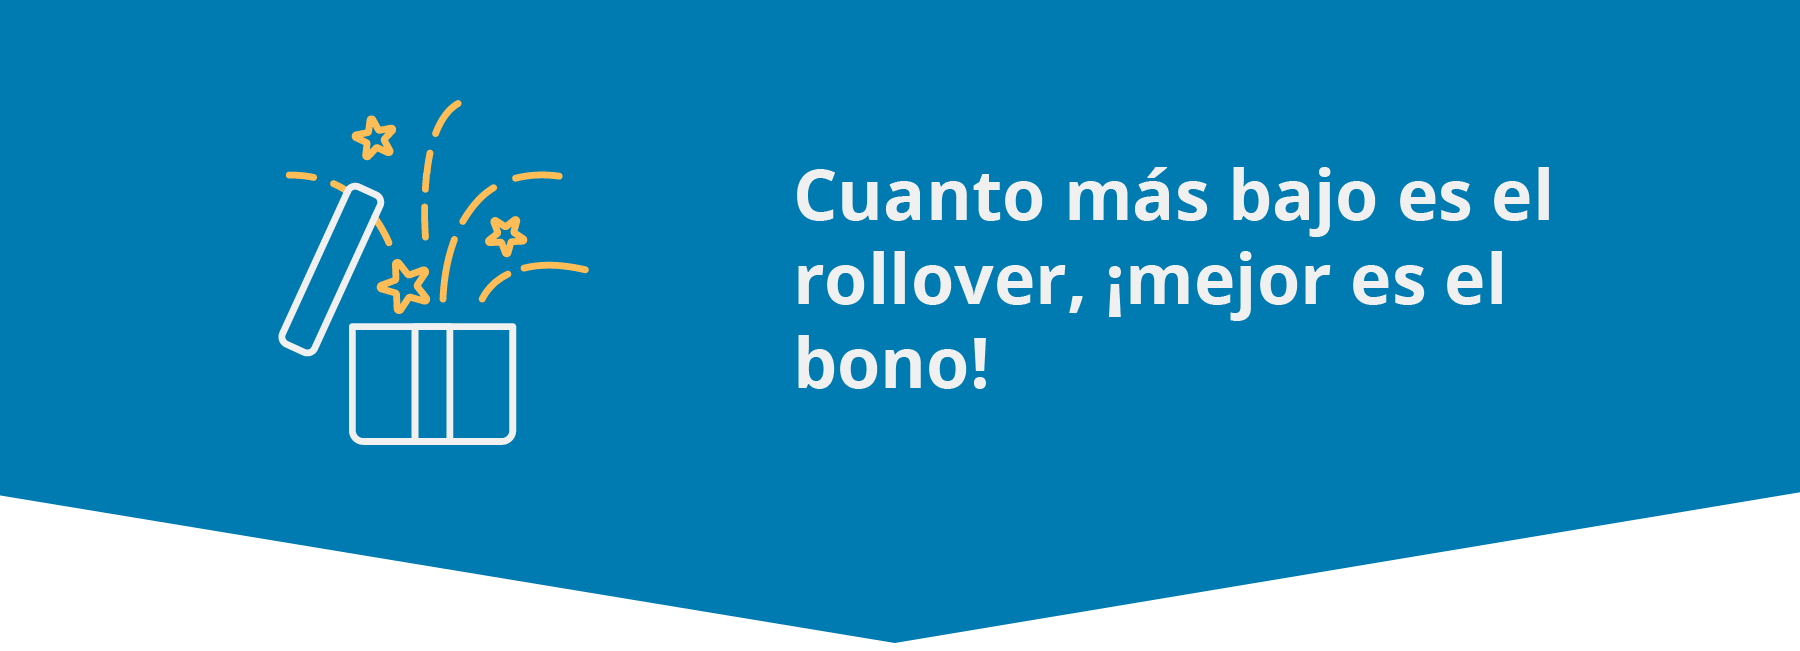 Rollover casinos Argentina